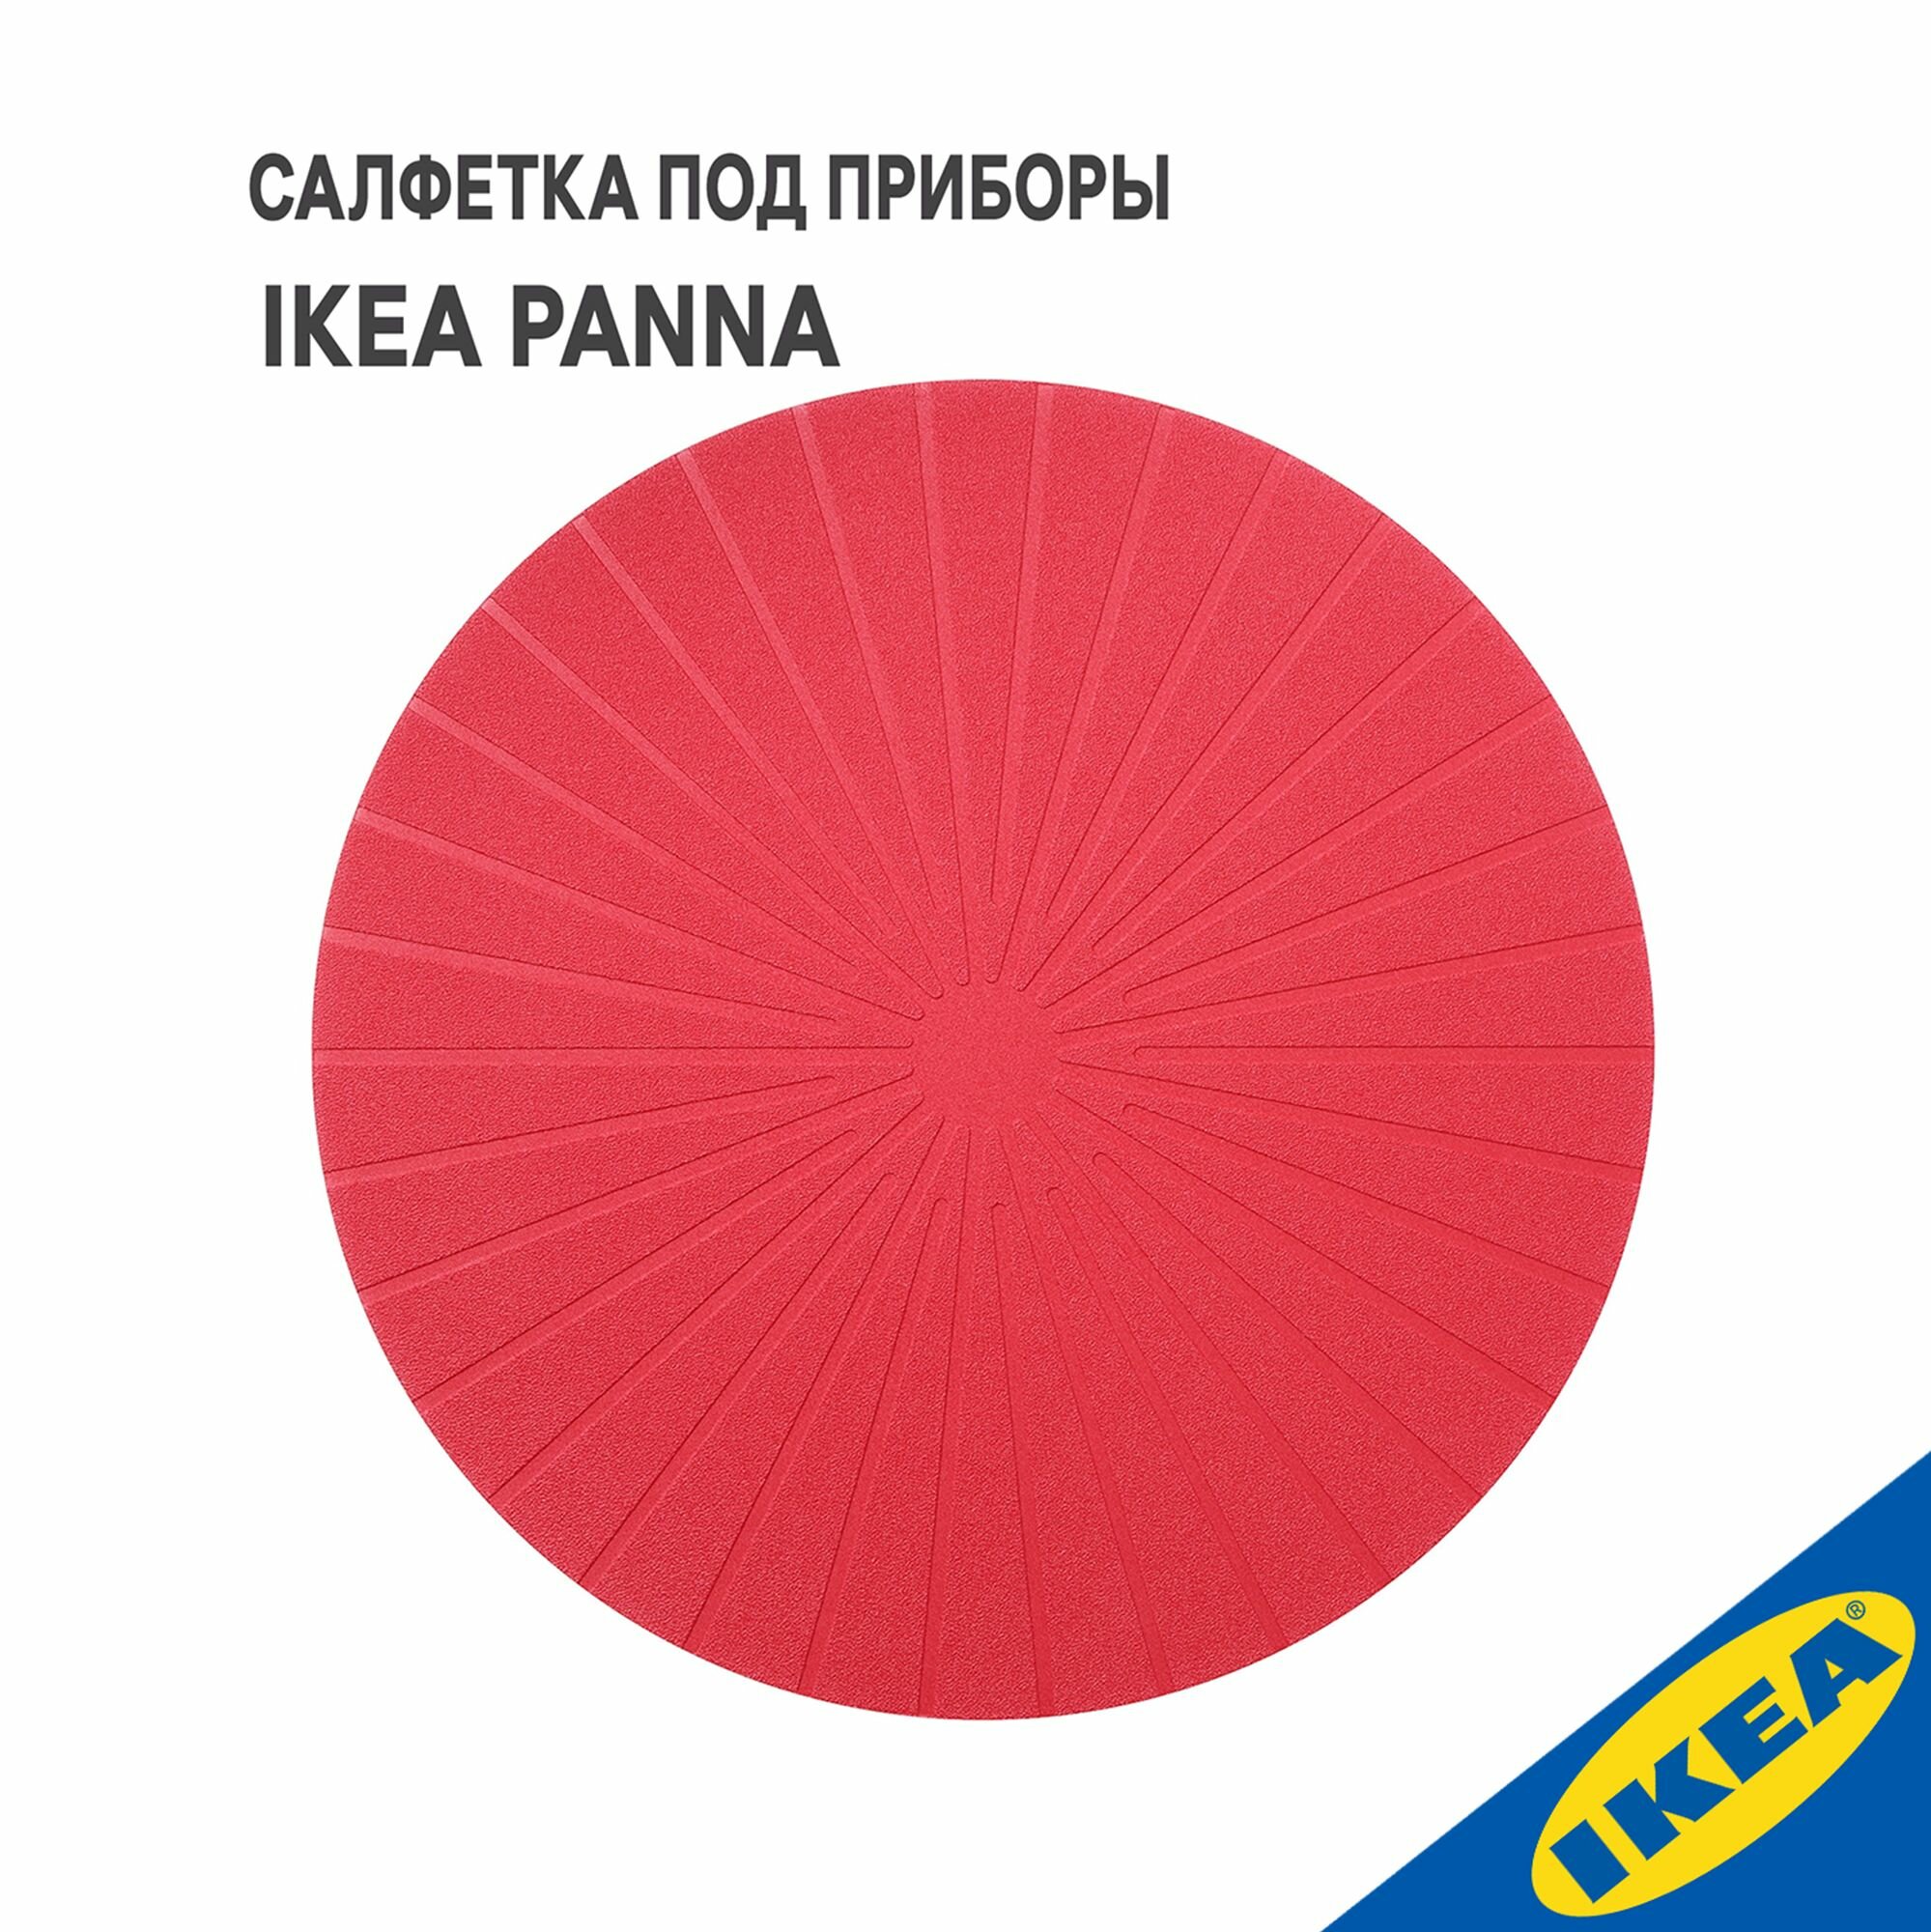 Салфетка под приборы IKEA PANNA панно 37 см красный